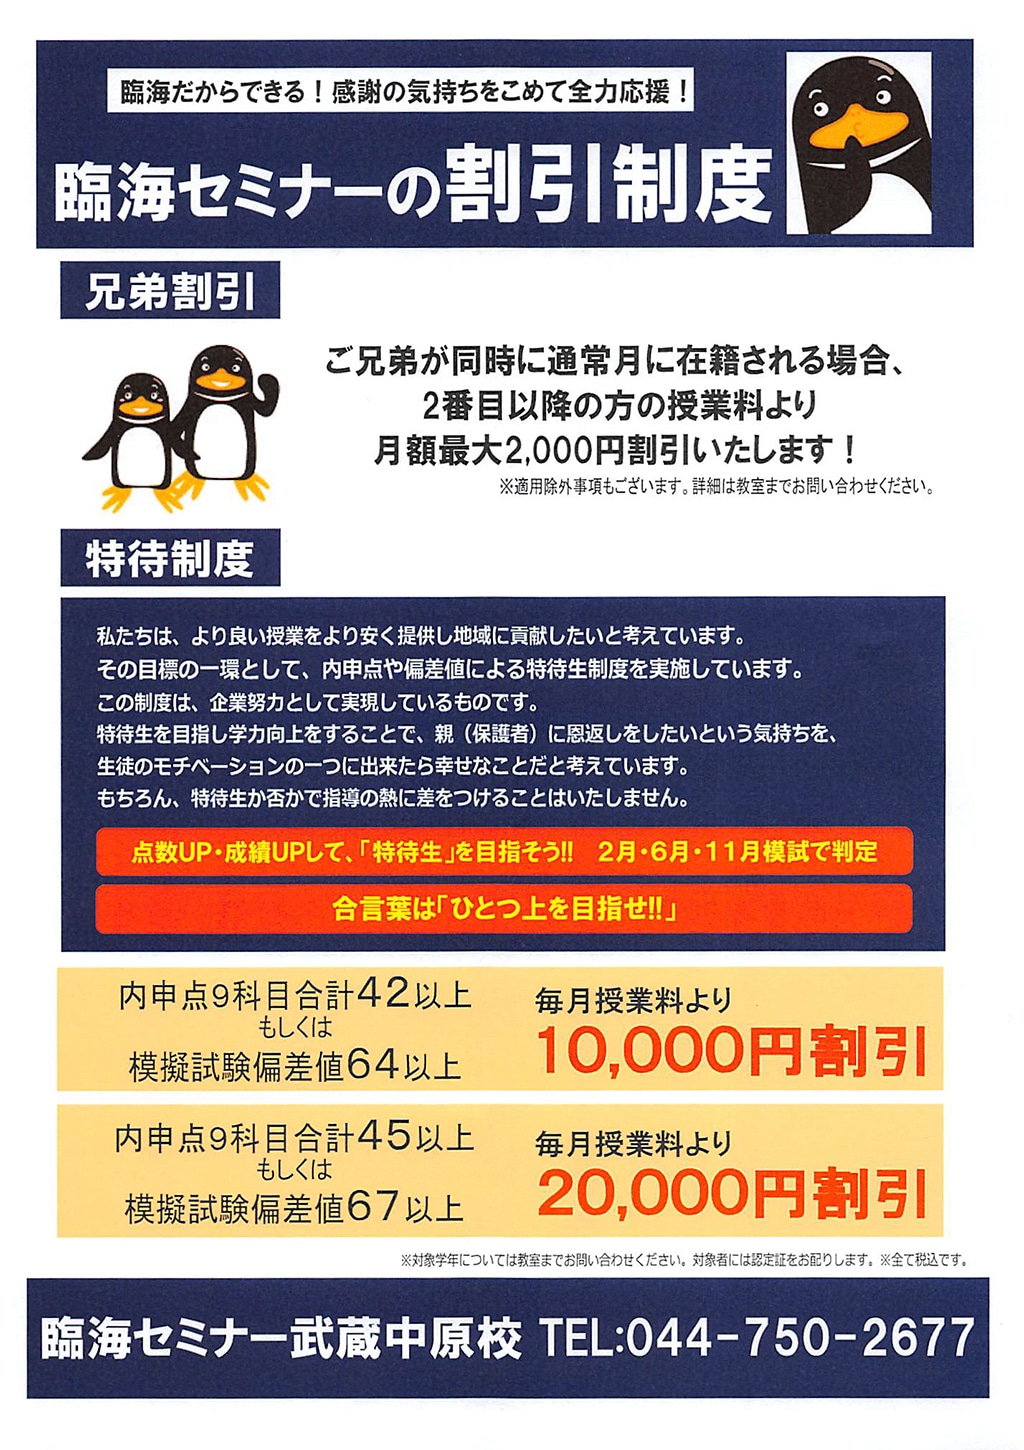 臨海セミナー武蔵中原 偏差値 64 で１万 67 で２万円割引 カナガク